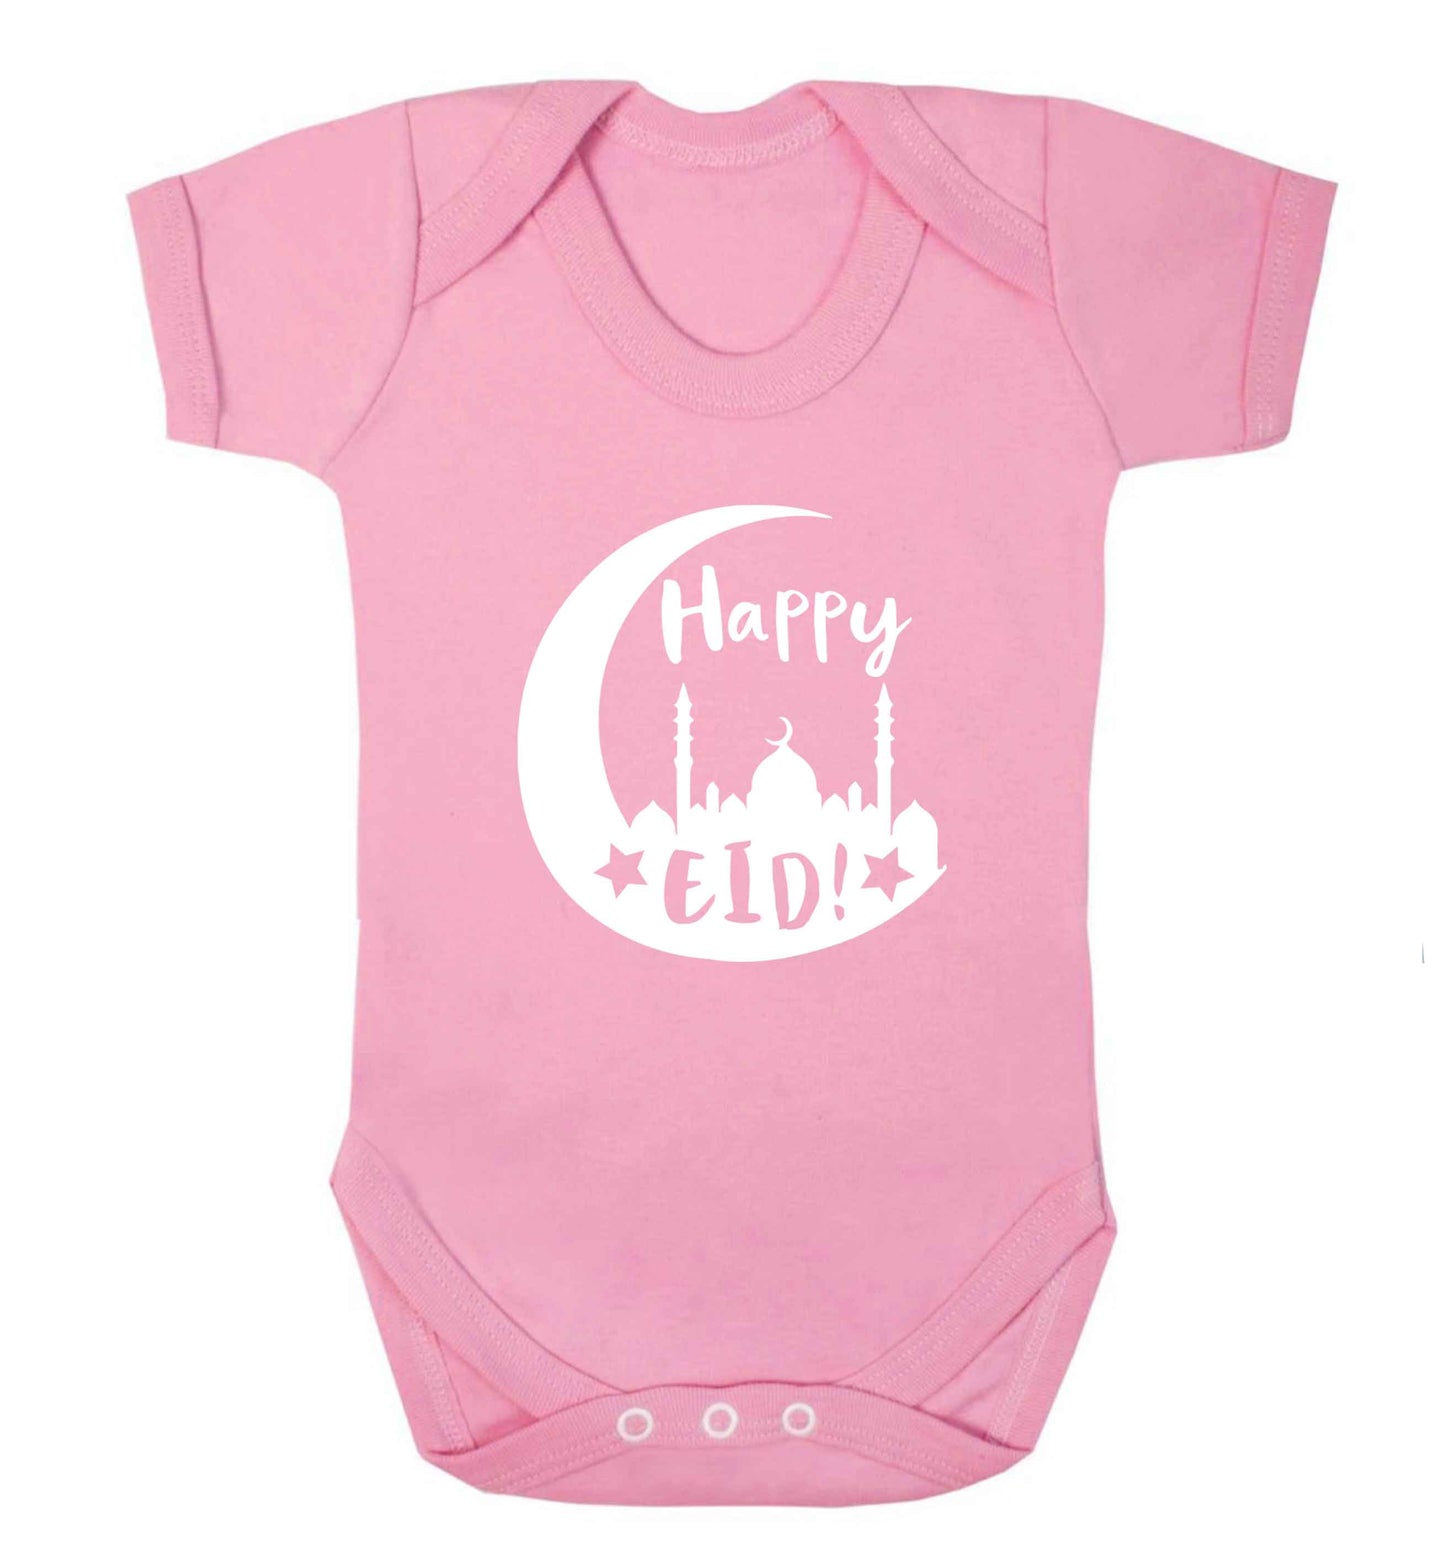 Happy Eid baby vest pale pink 18-24 months